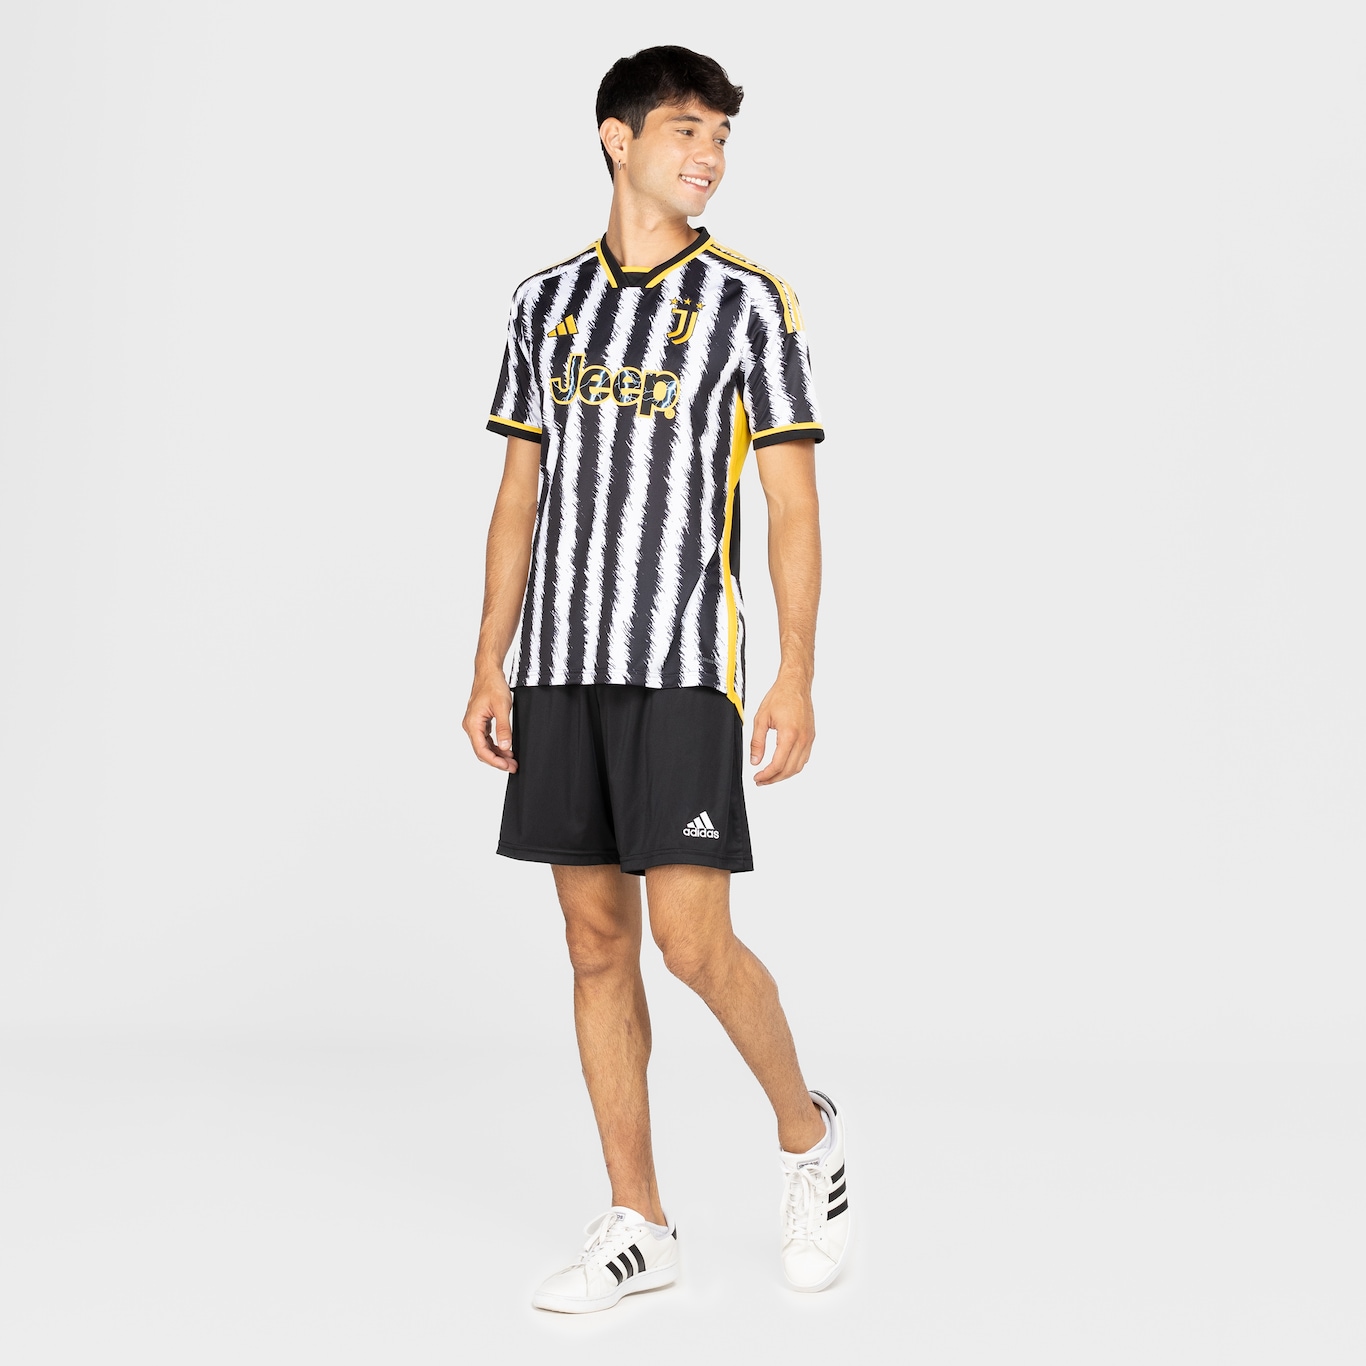 Camisa do Juventus I 23 adidas Masculina Torcedor - Foto 3